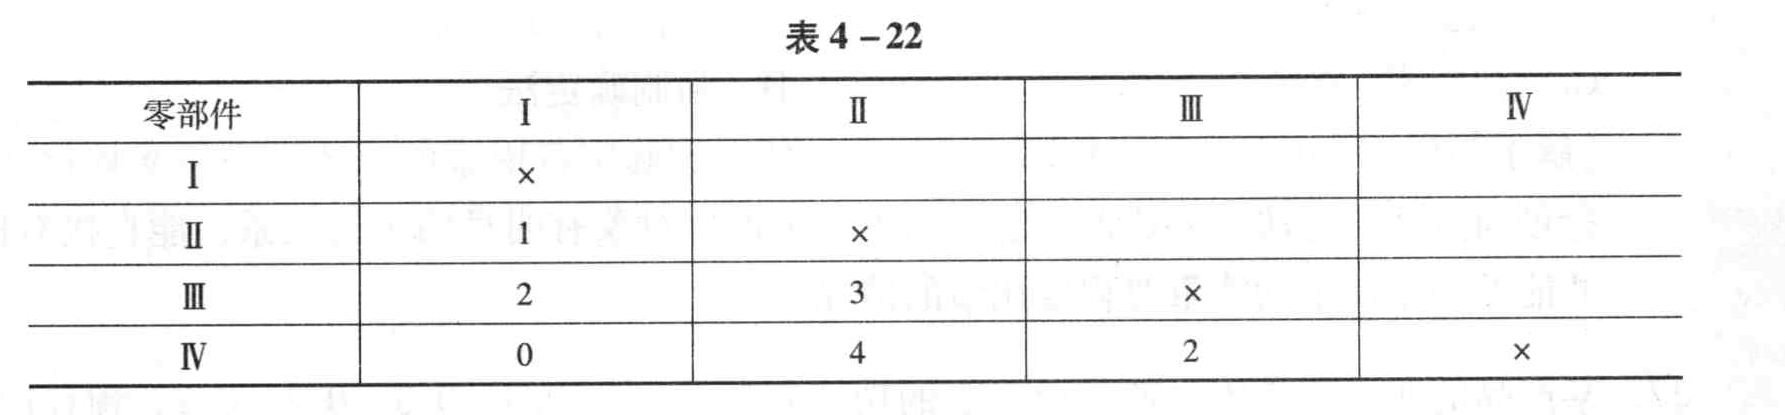 某产品各个零部件功能重要程度采用0-4法评分的结果如表4-22所示。在不调整各功能累计得分的前提下,零部件Ⅲ的功能重要性系数为()。